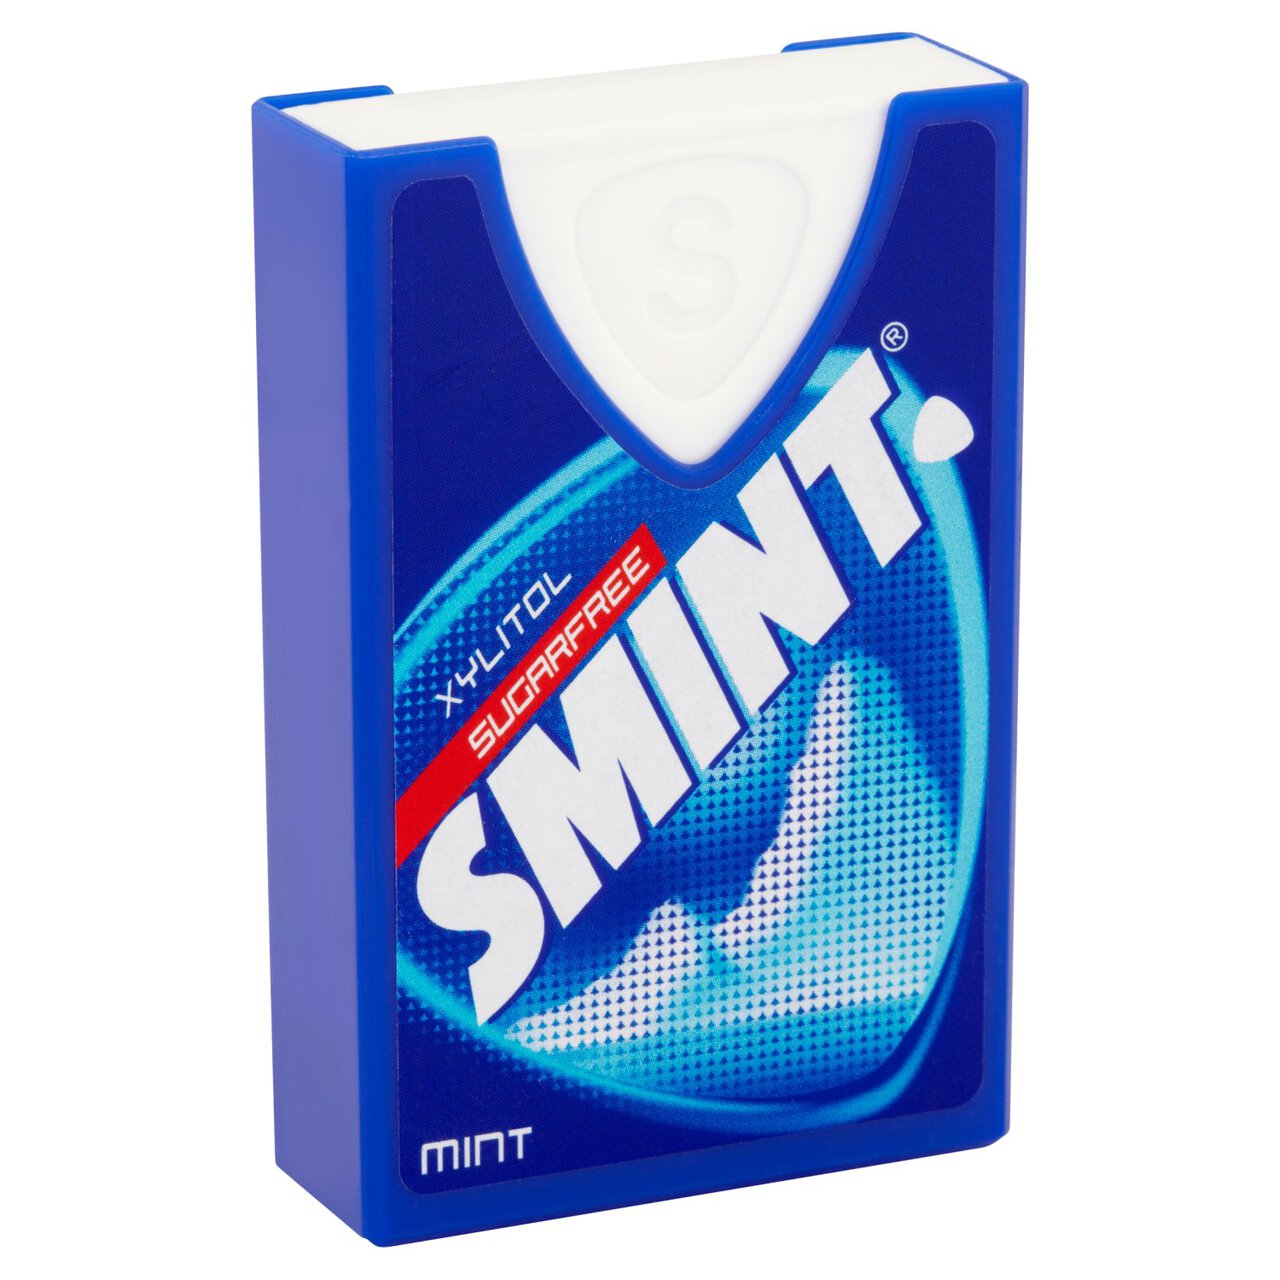 Smint Original Sugar Free 40 per pack